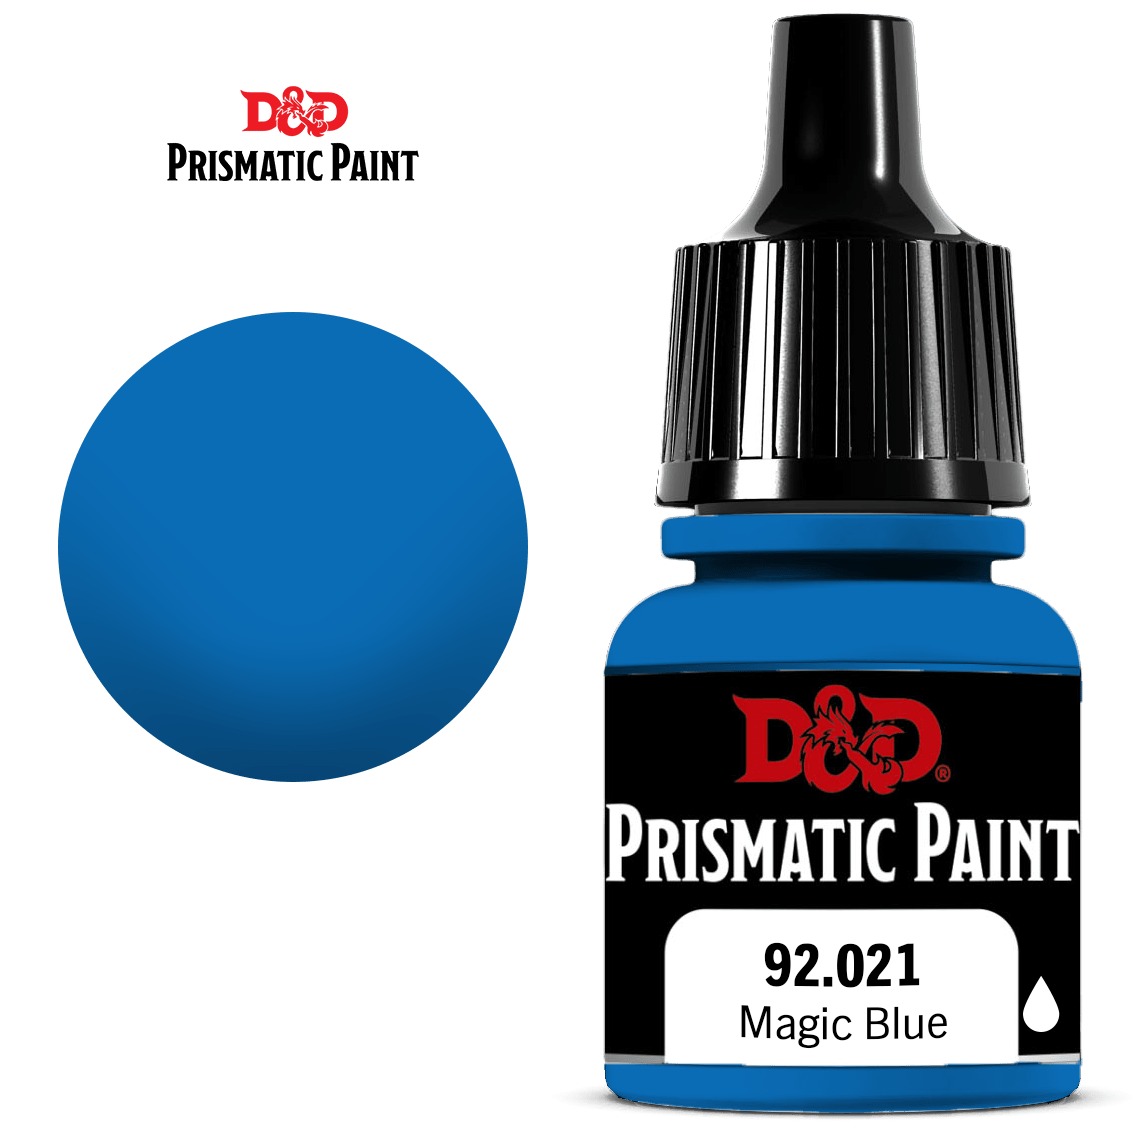 PRISMATIC PAINT: MAGIC BLUE | BD Cosmos